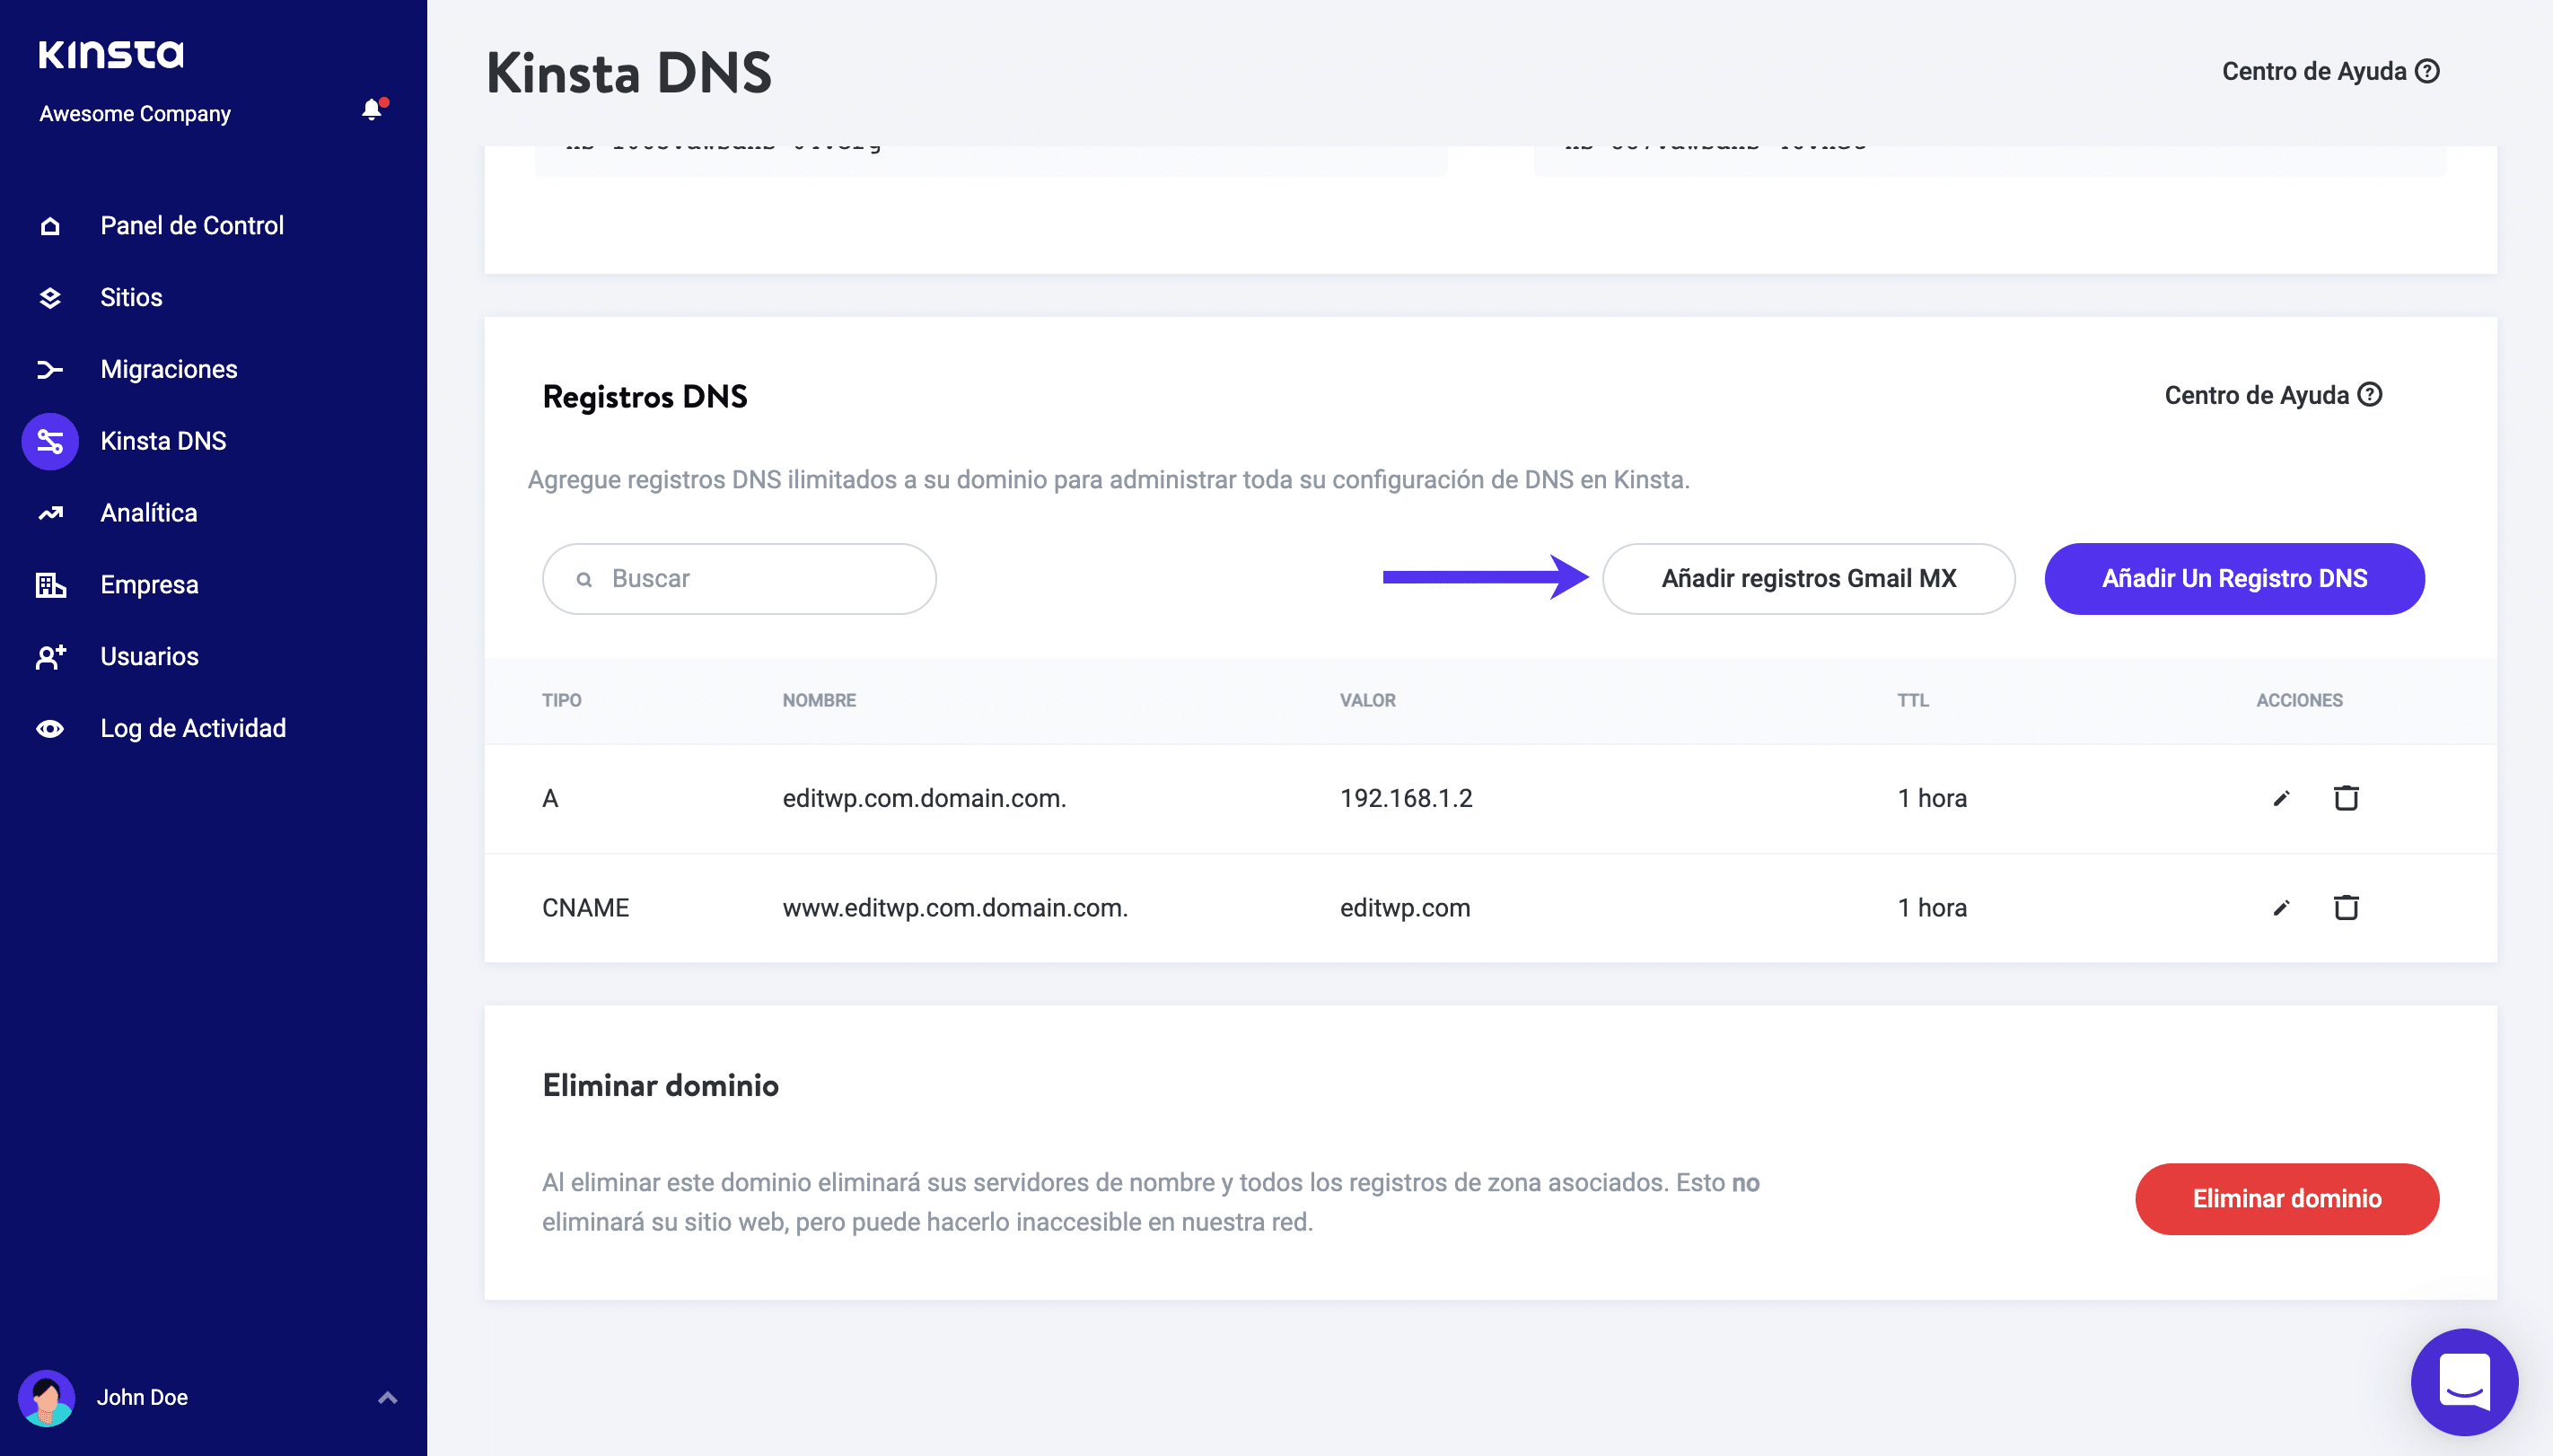 Añadir registros MX de Gmail en Kinsta DNS